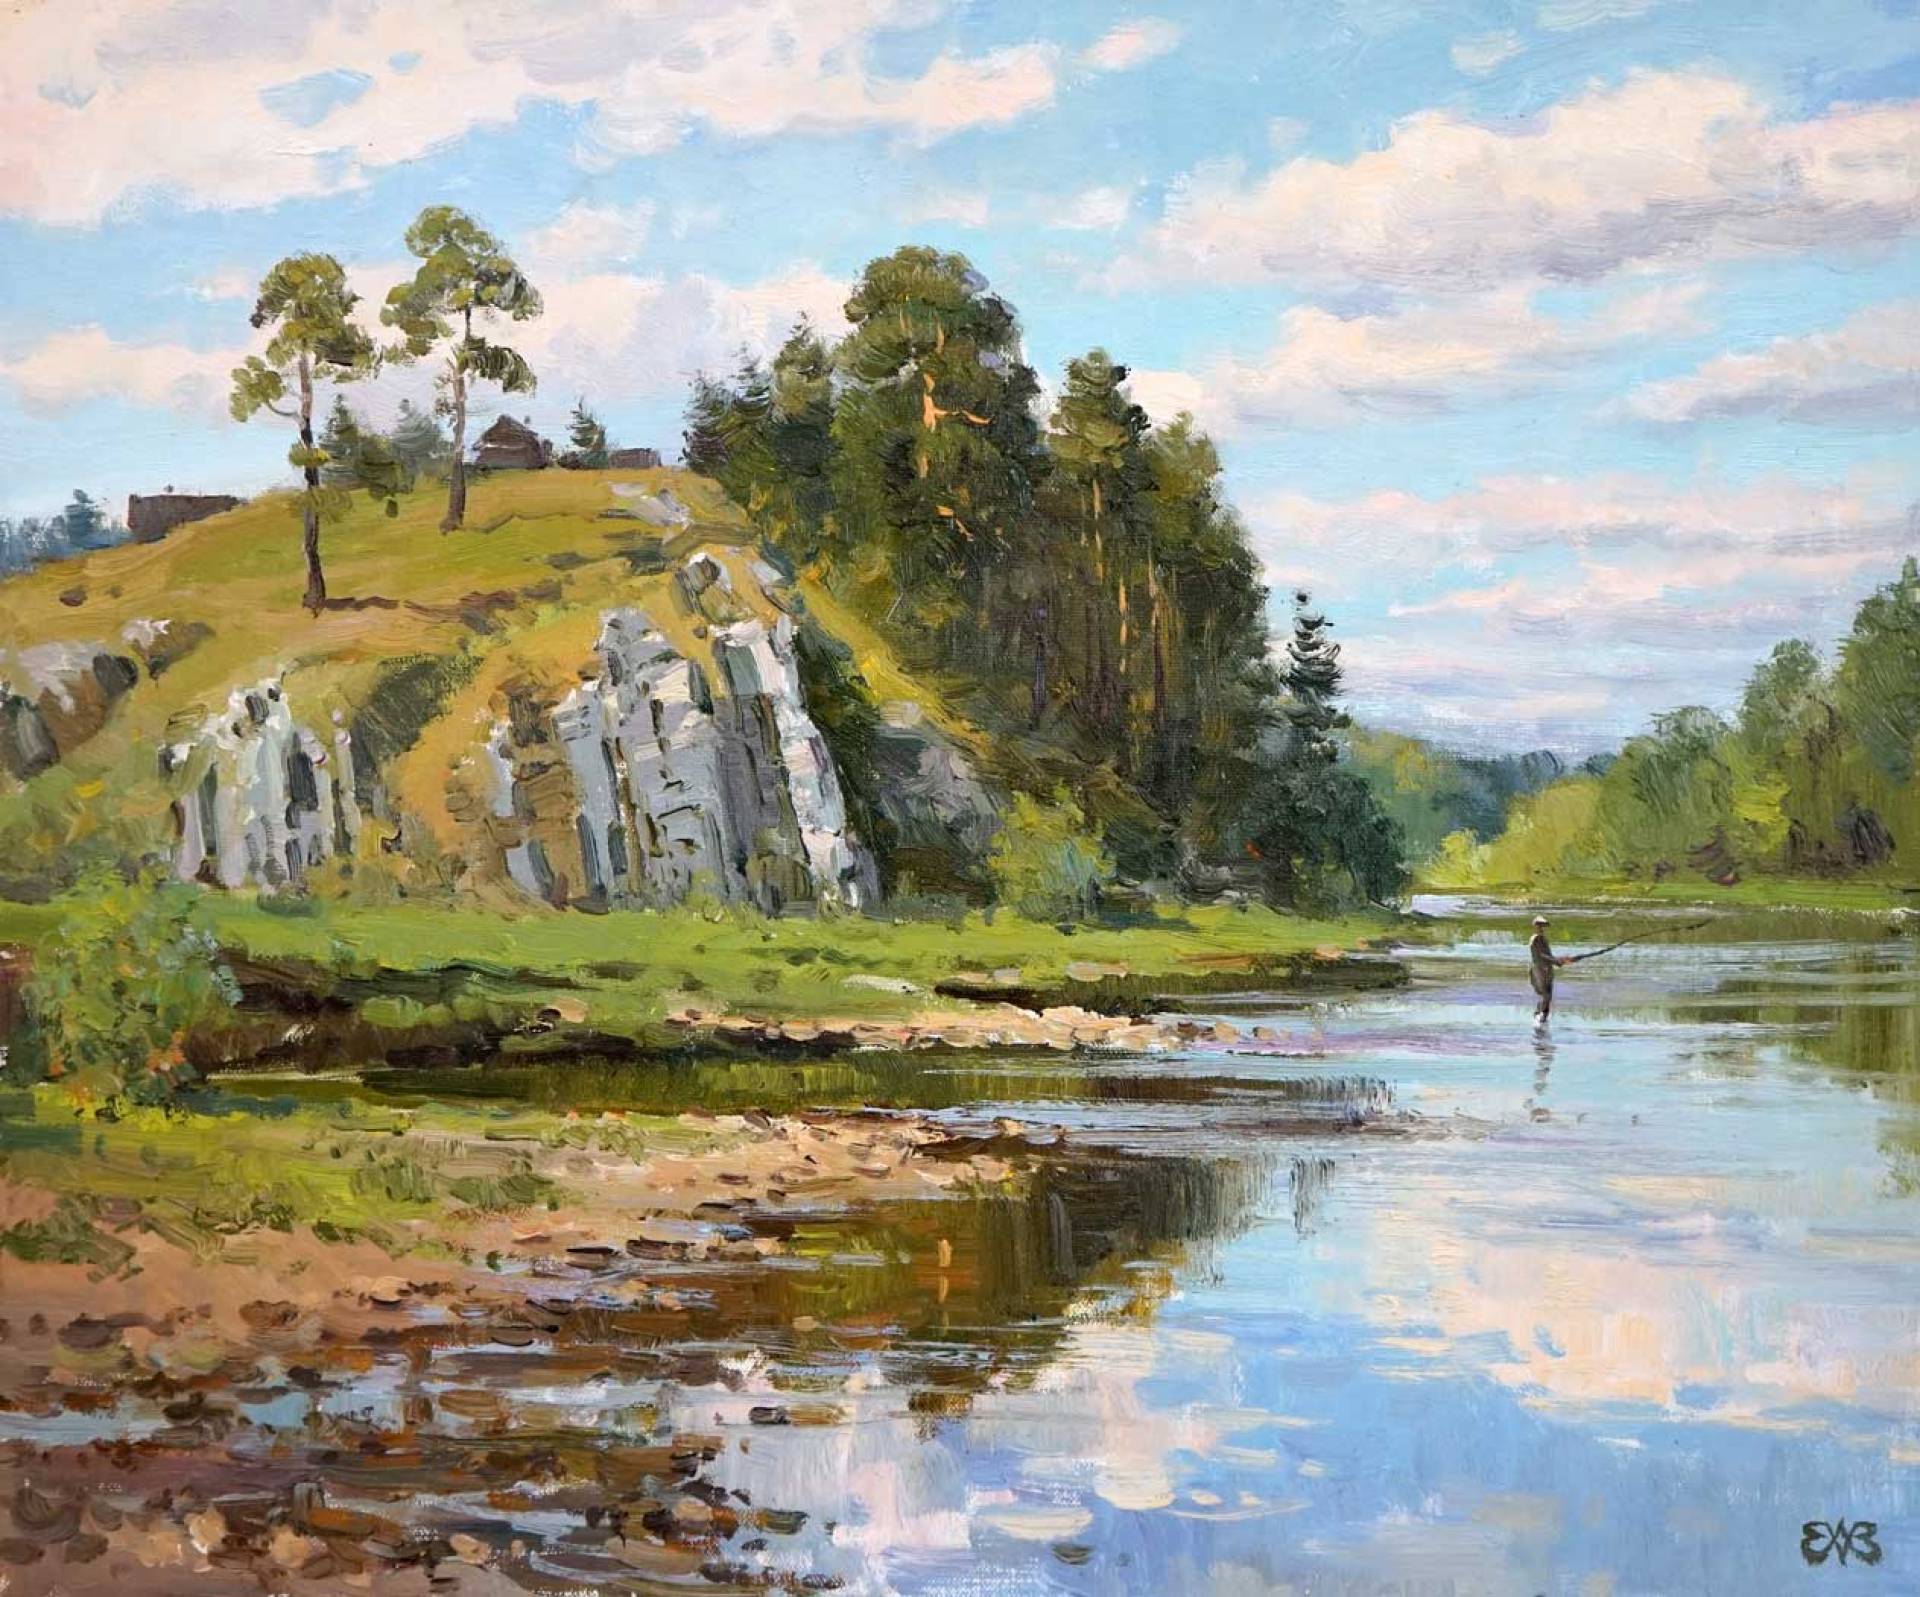 On Chusovaya. Kamenka, Alexey Efremov, Buy the painting Oil